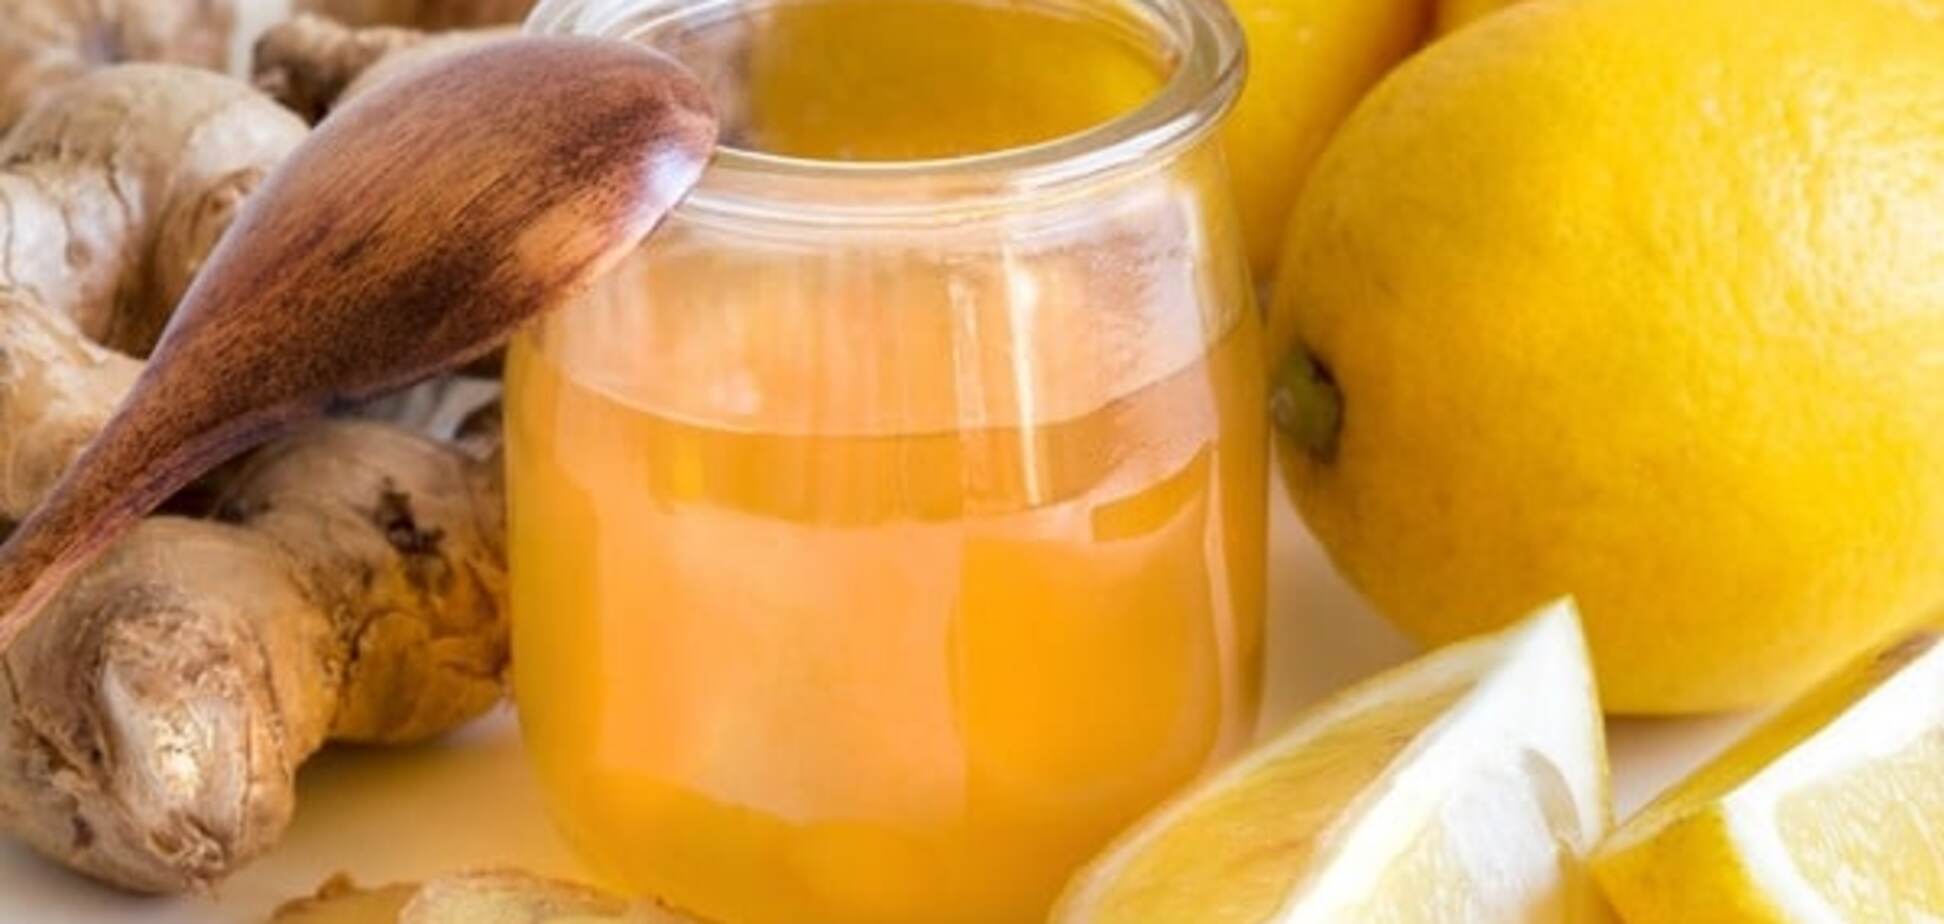 Імбирно-апельсиновий напій: рецепт коктейлю проти застуди